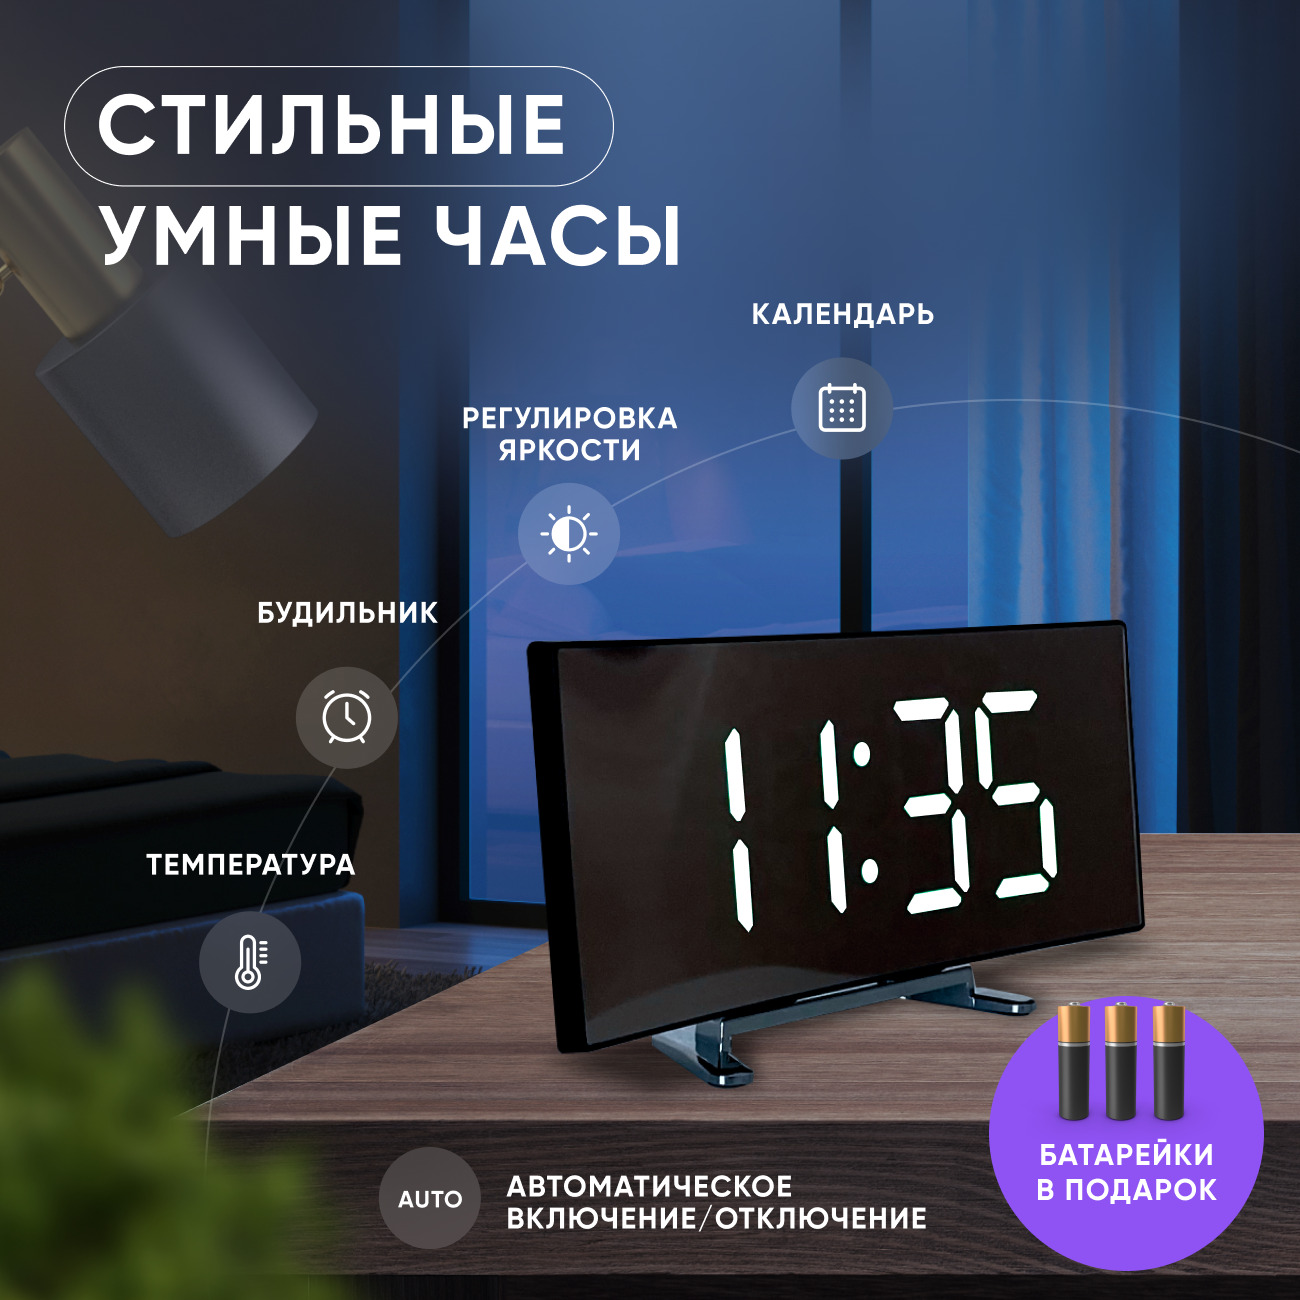 Часынастольныеэлектронныенабатарейках,отсети,USB:будильник,термометр,календарь,подсветка,декордома.